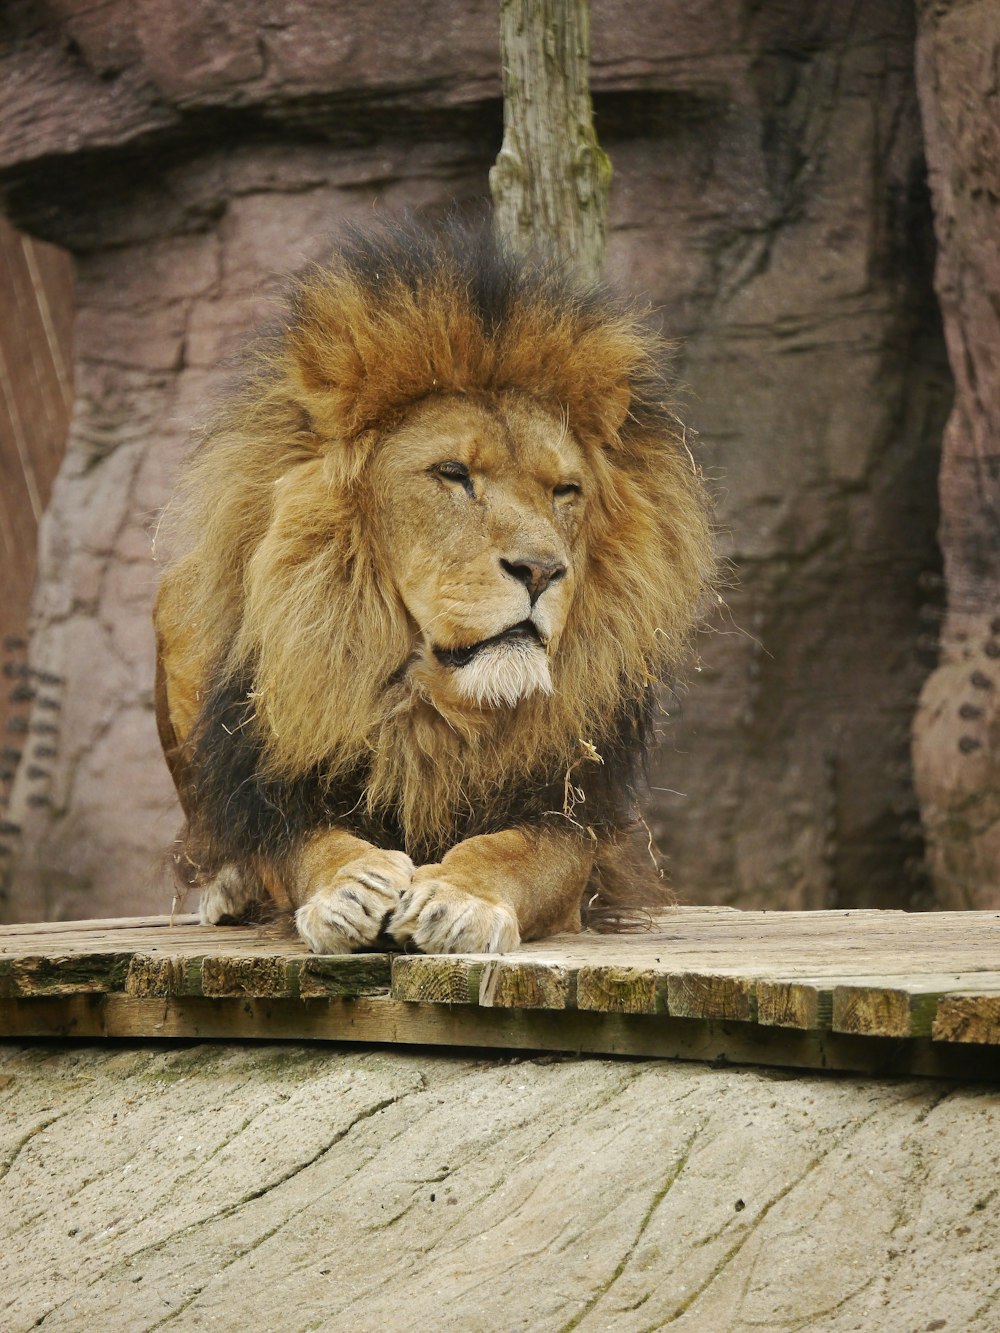 동물원의 난간에 앉아 있는 사자